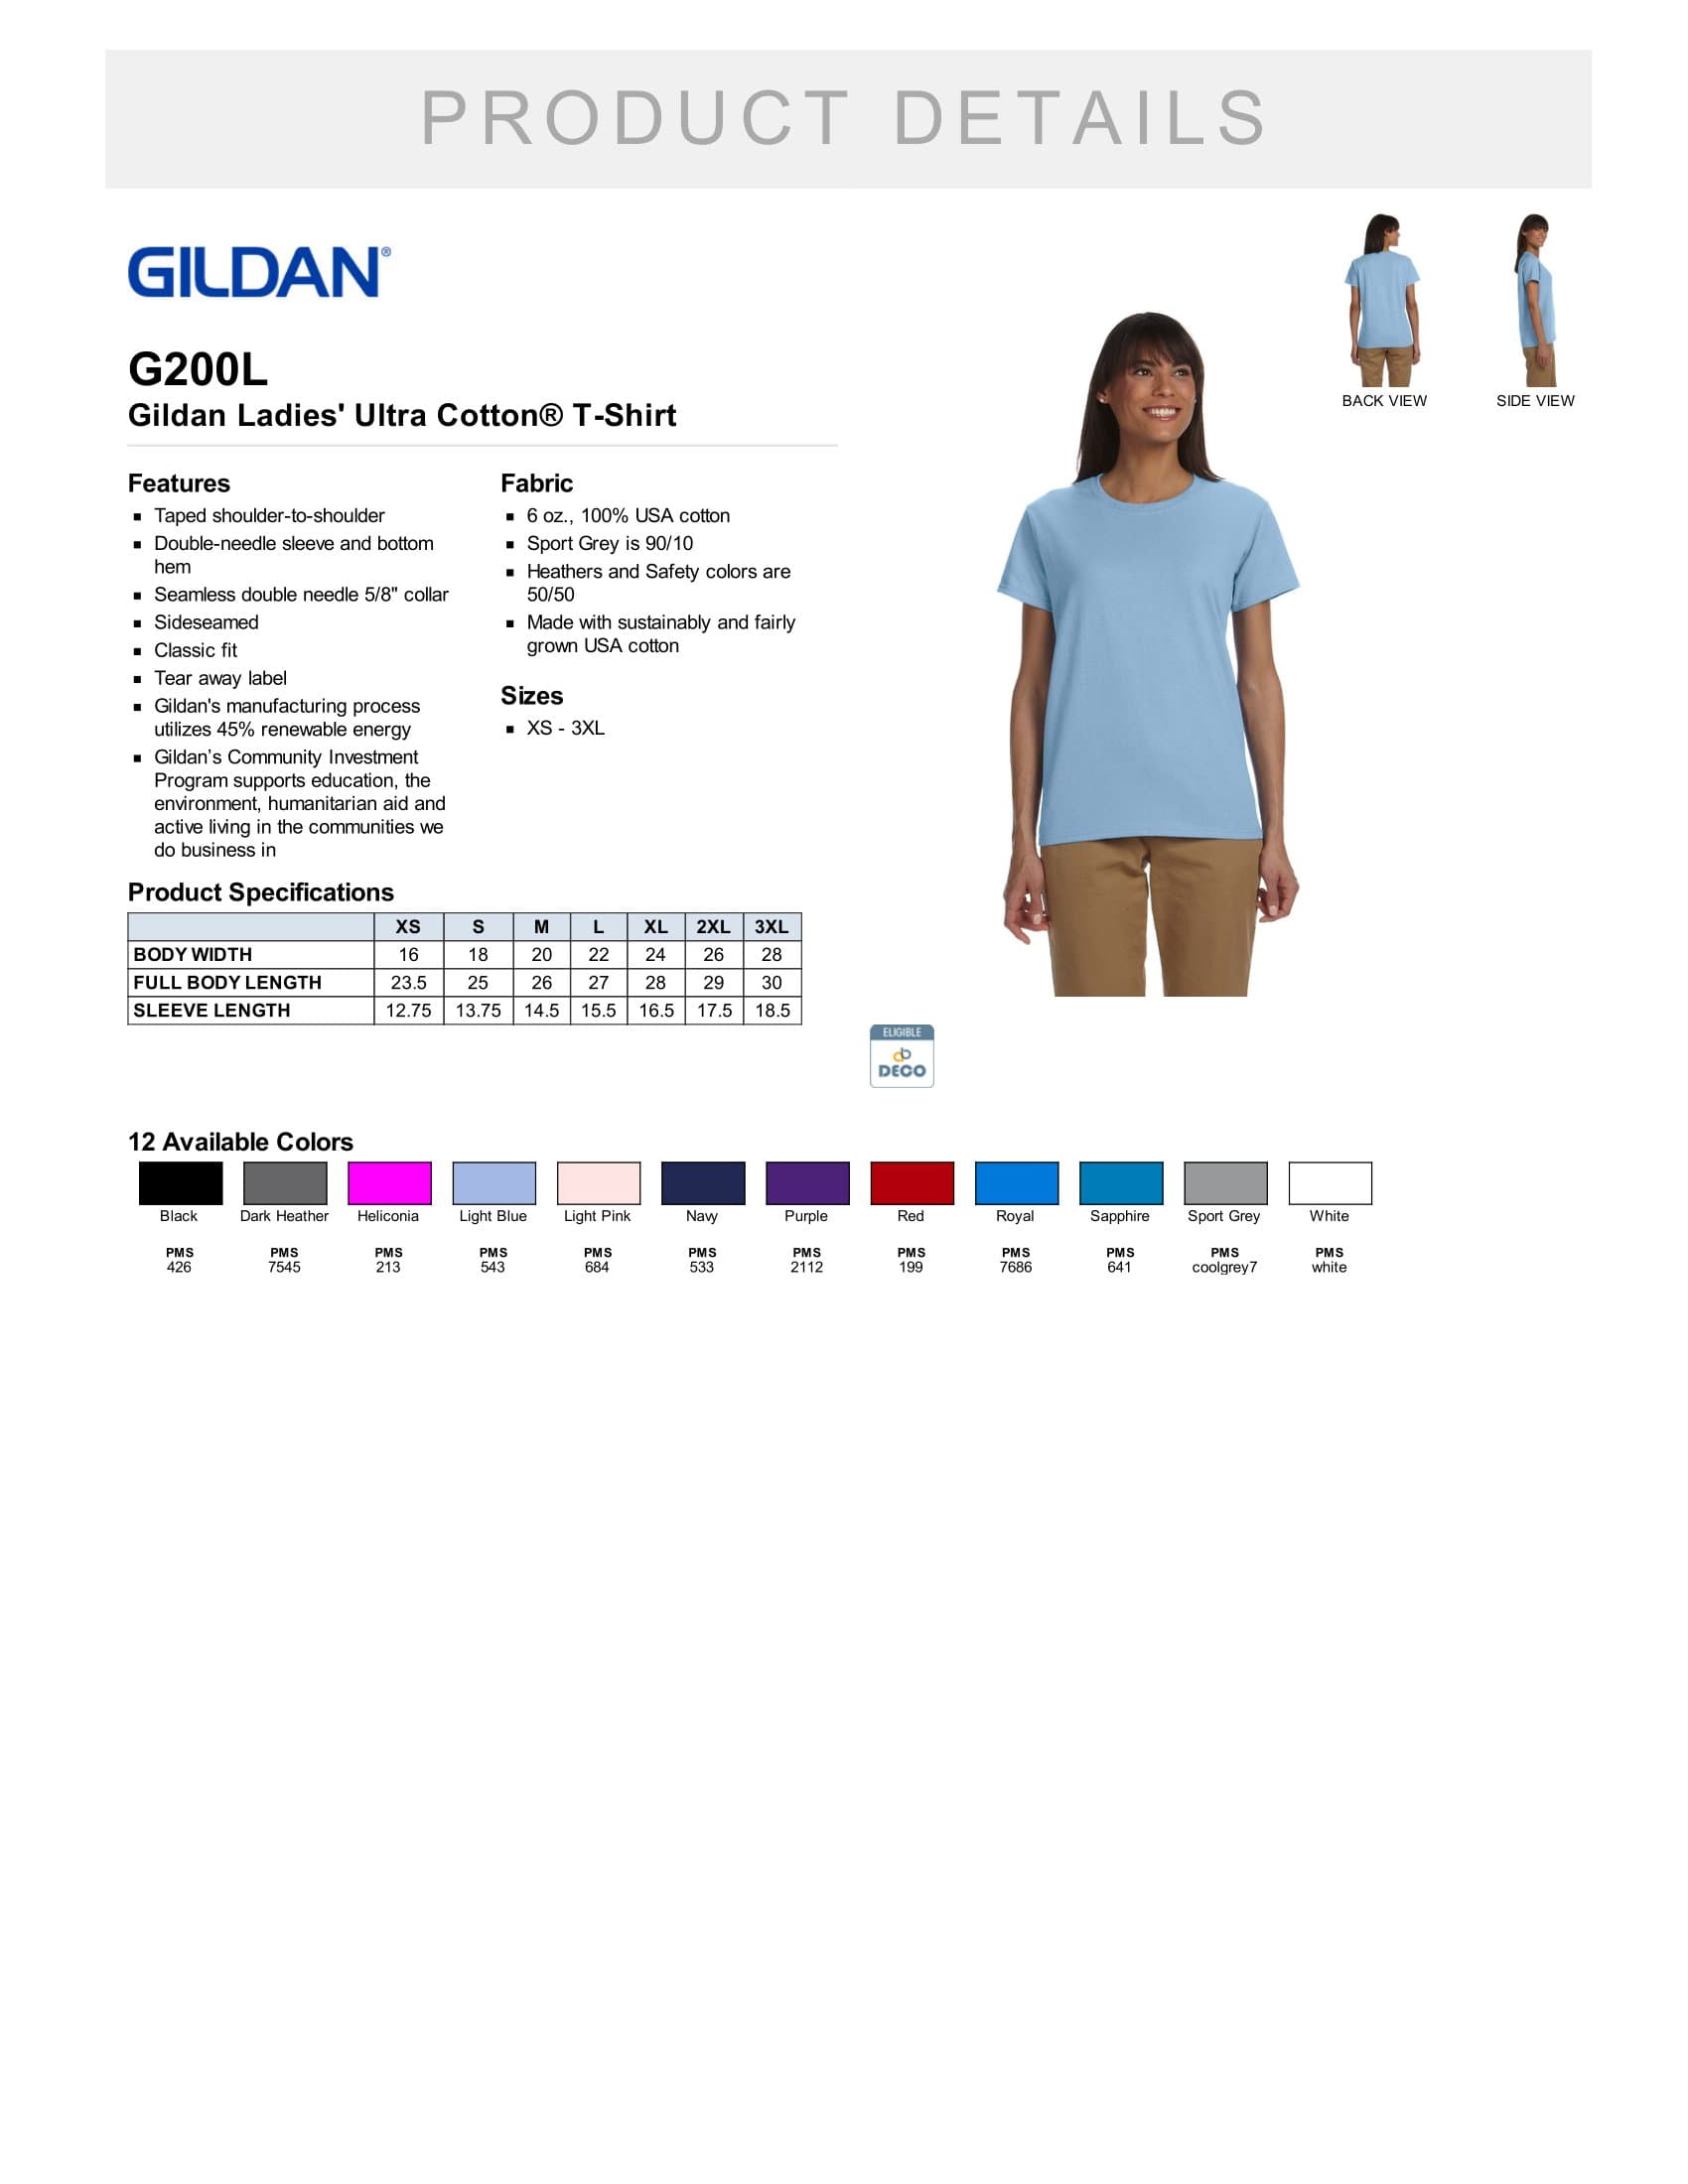 Gildan G200L 